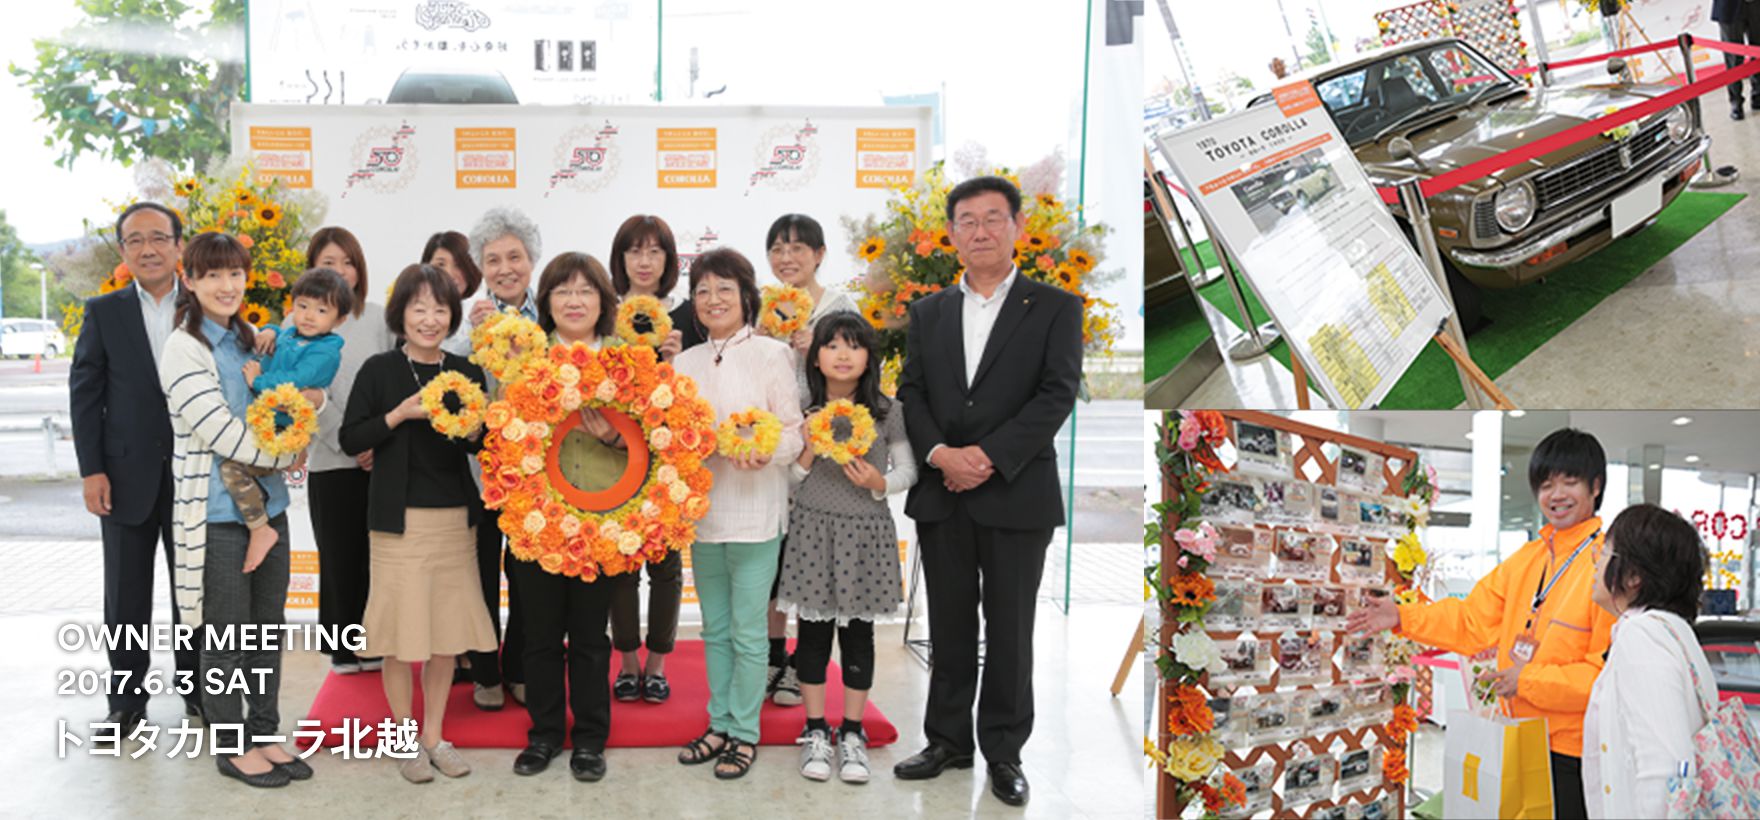 トヨタ インフォメーション キャンペーン カローラ 笑顔の花冠プロジェクト トヨタカローラ北越 トヨタ自動車webサイト